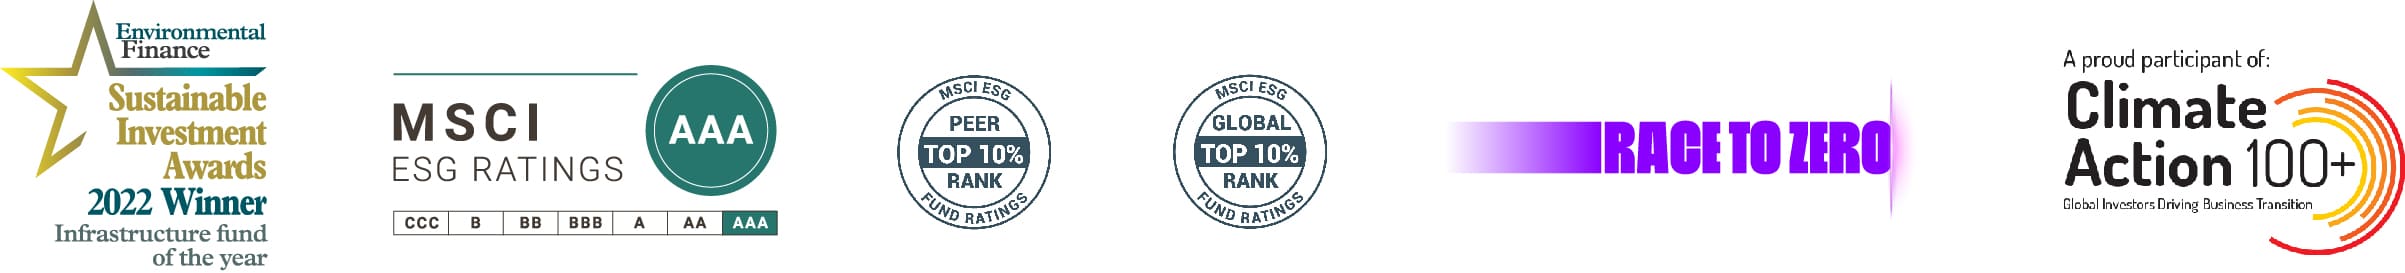 ESG awards and affiliations